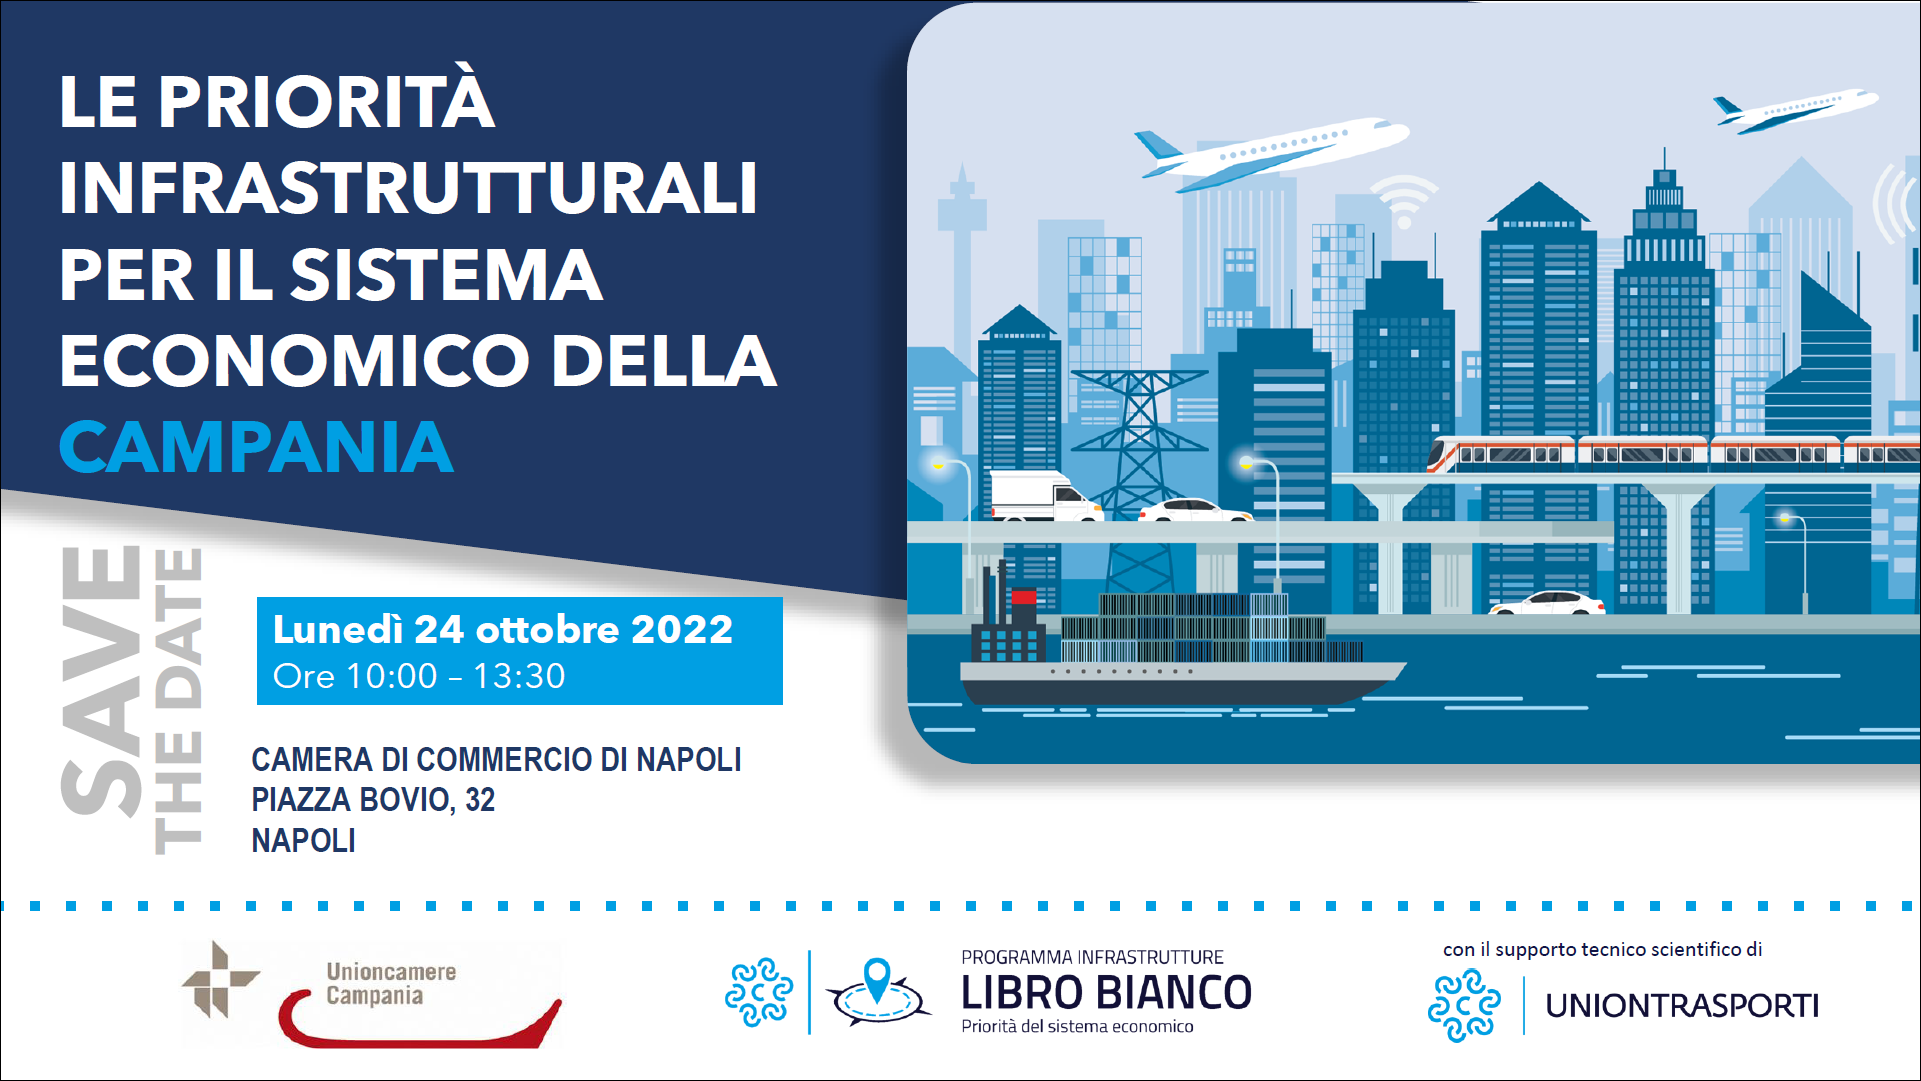 Le priorità infrastrutturali per il sistema economico della Campania - 24 ottobre 2022